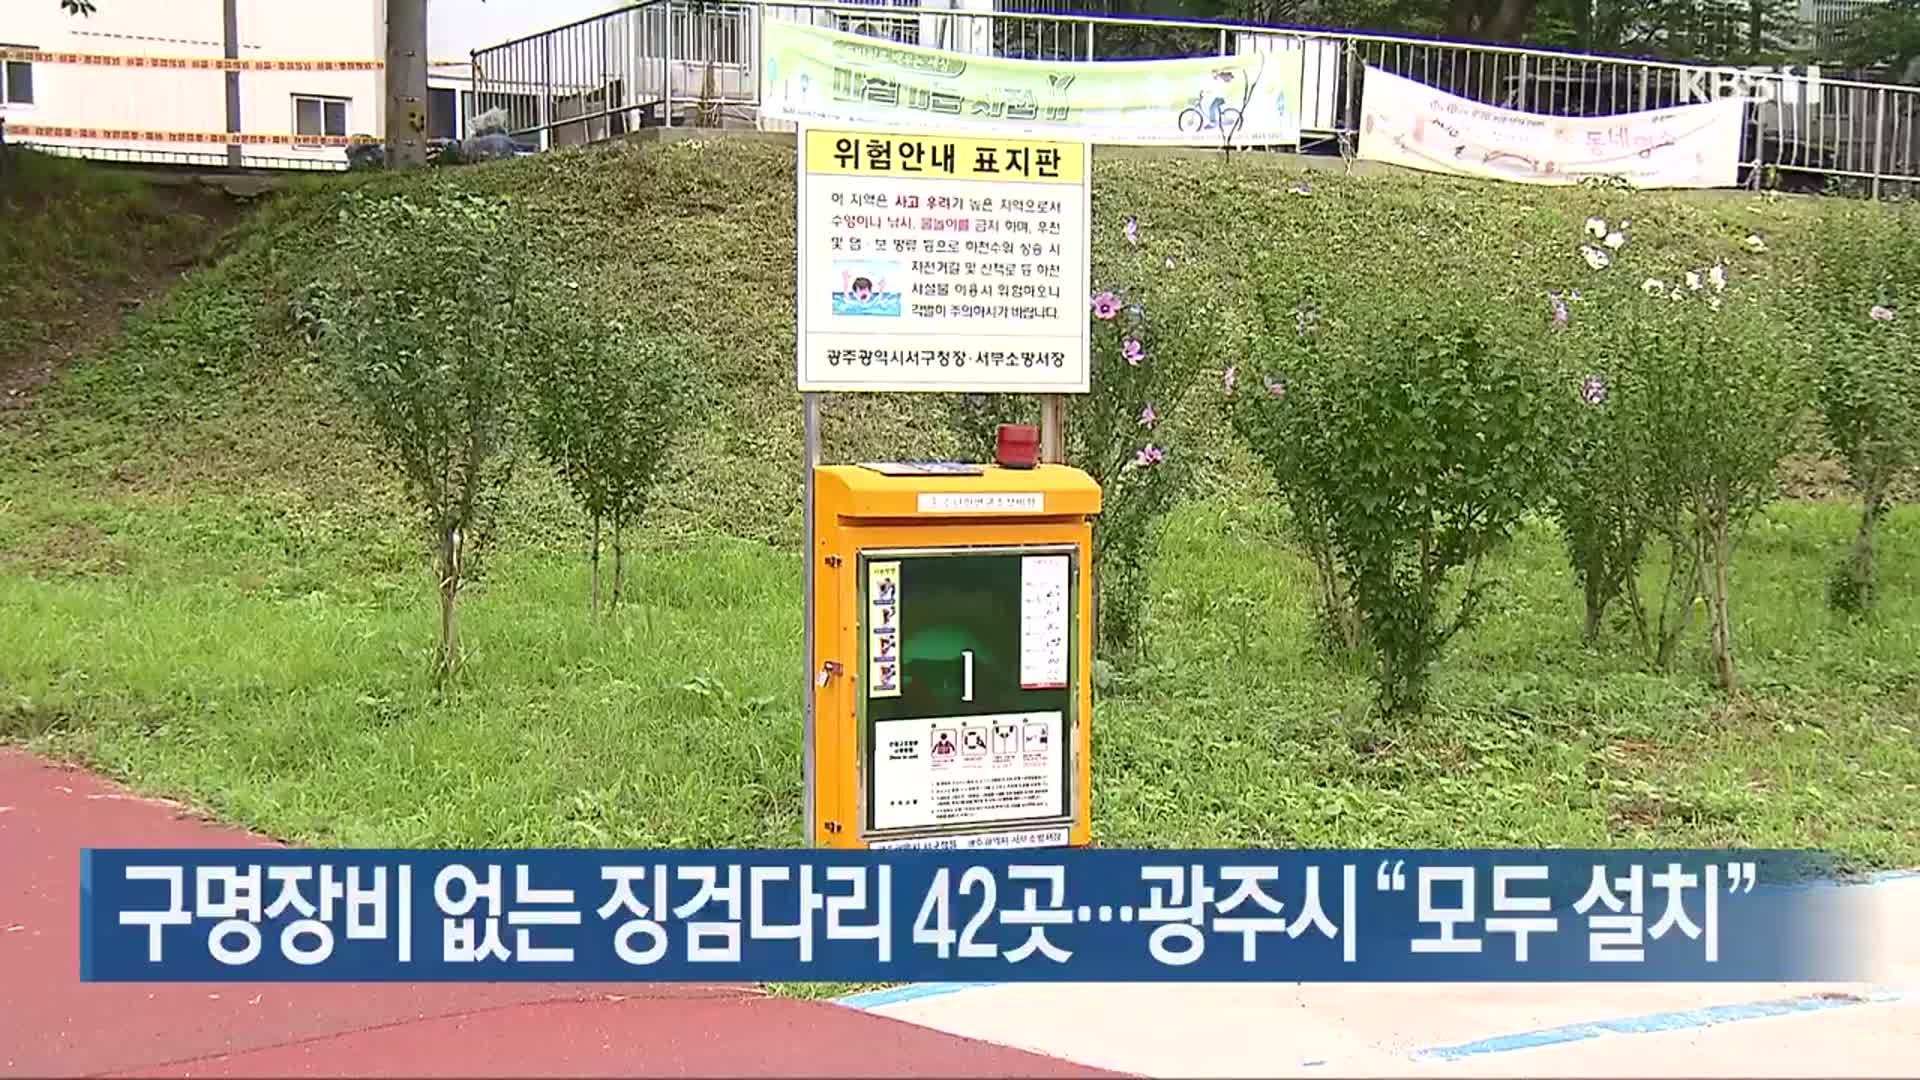 구명장비 없는 징검다리 42곳…광주시 “모두 설치”